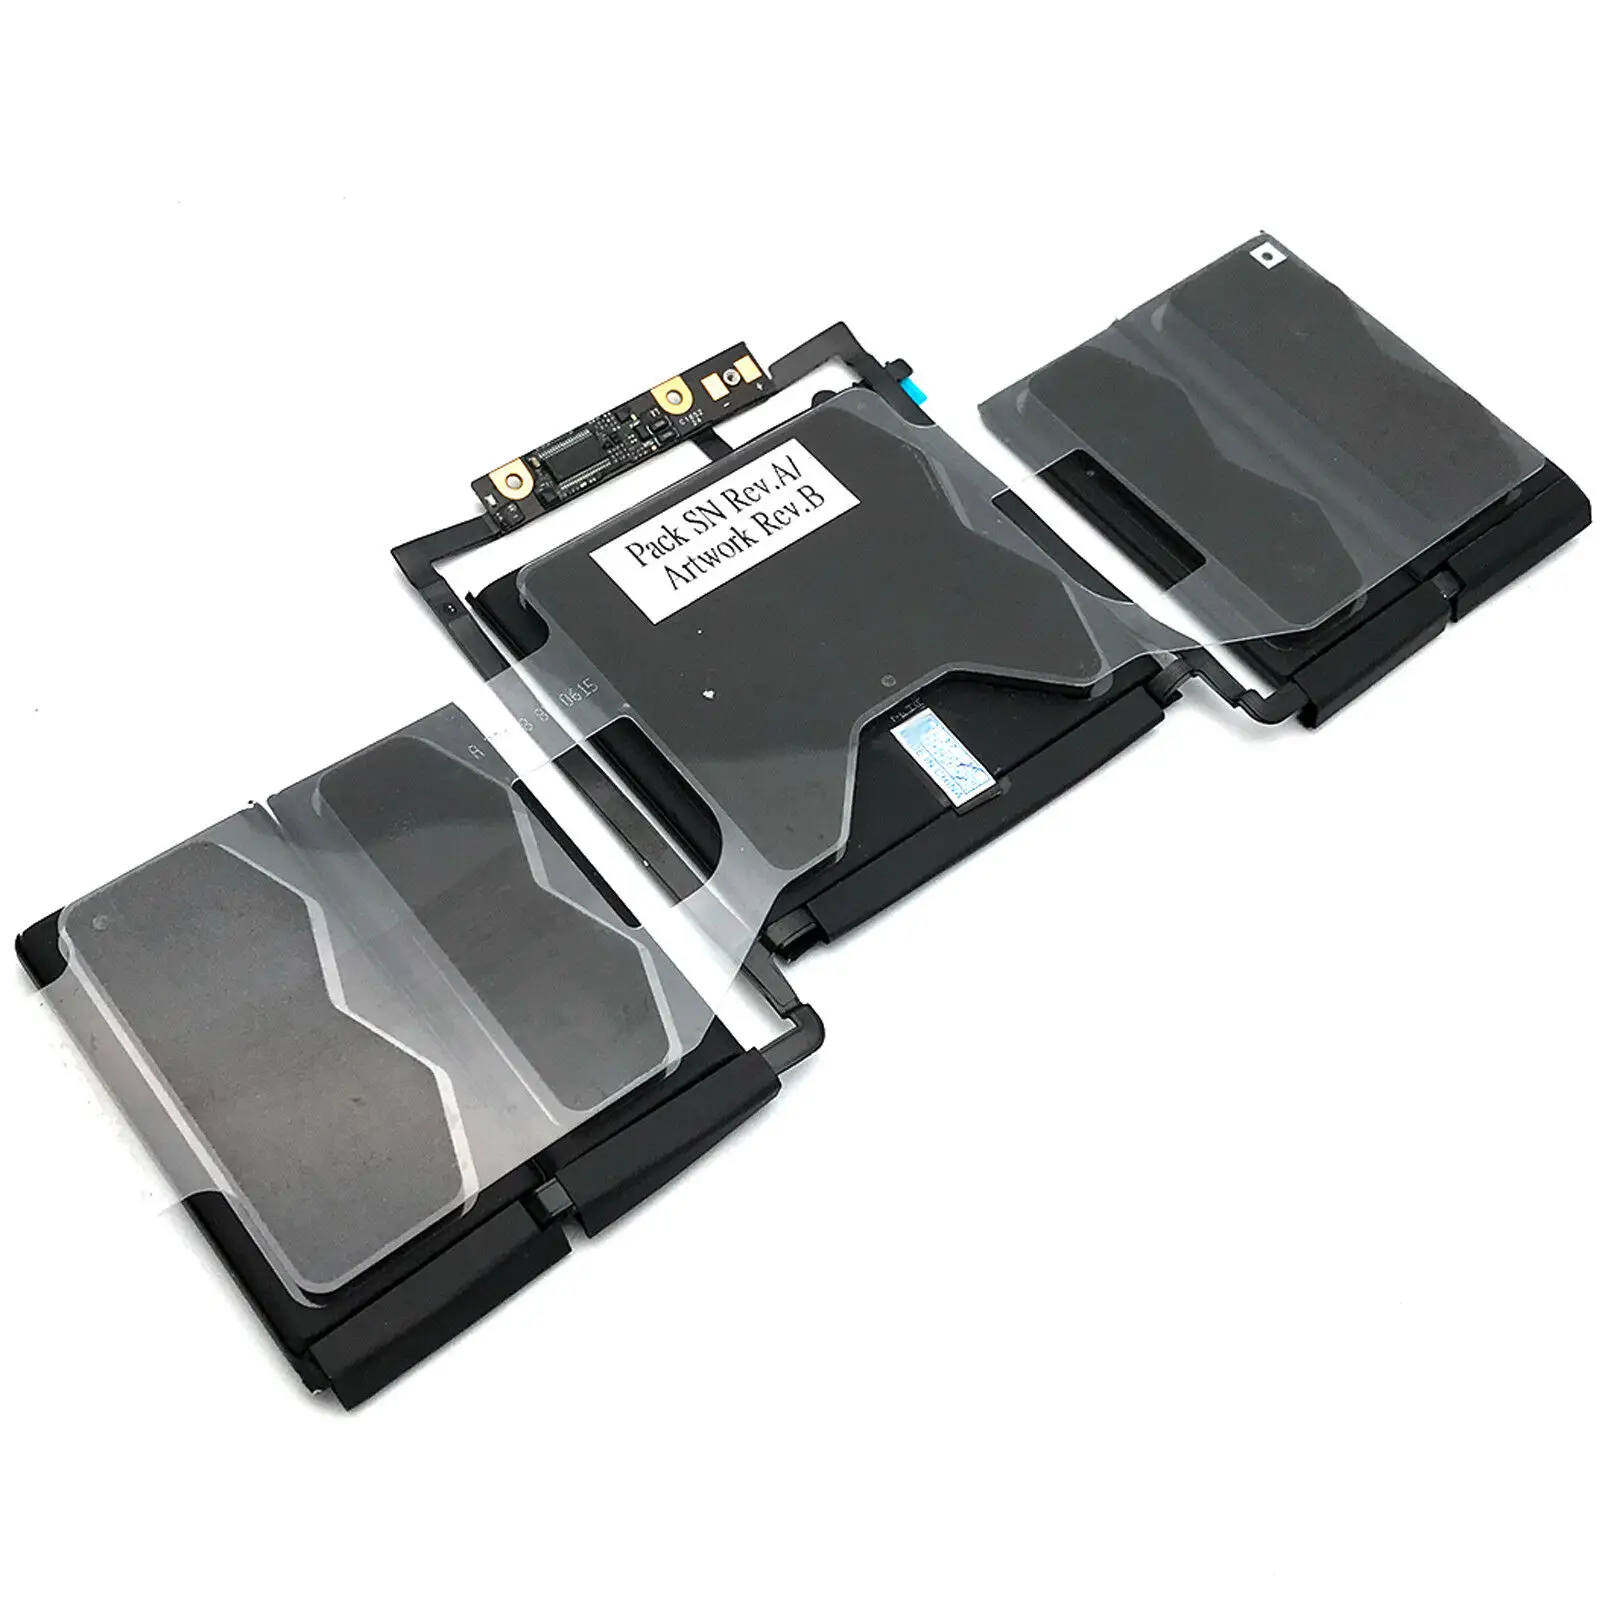 新款a1819 a1706 笔记本电脑电池适用于 macbook pro 13 a1706 电池